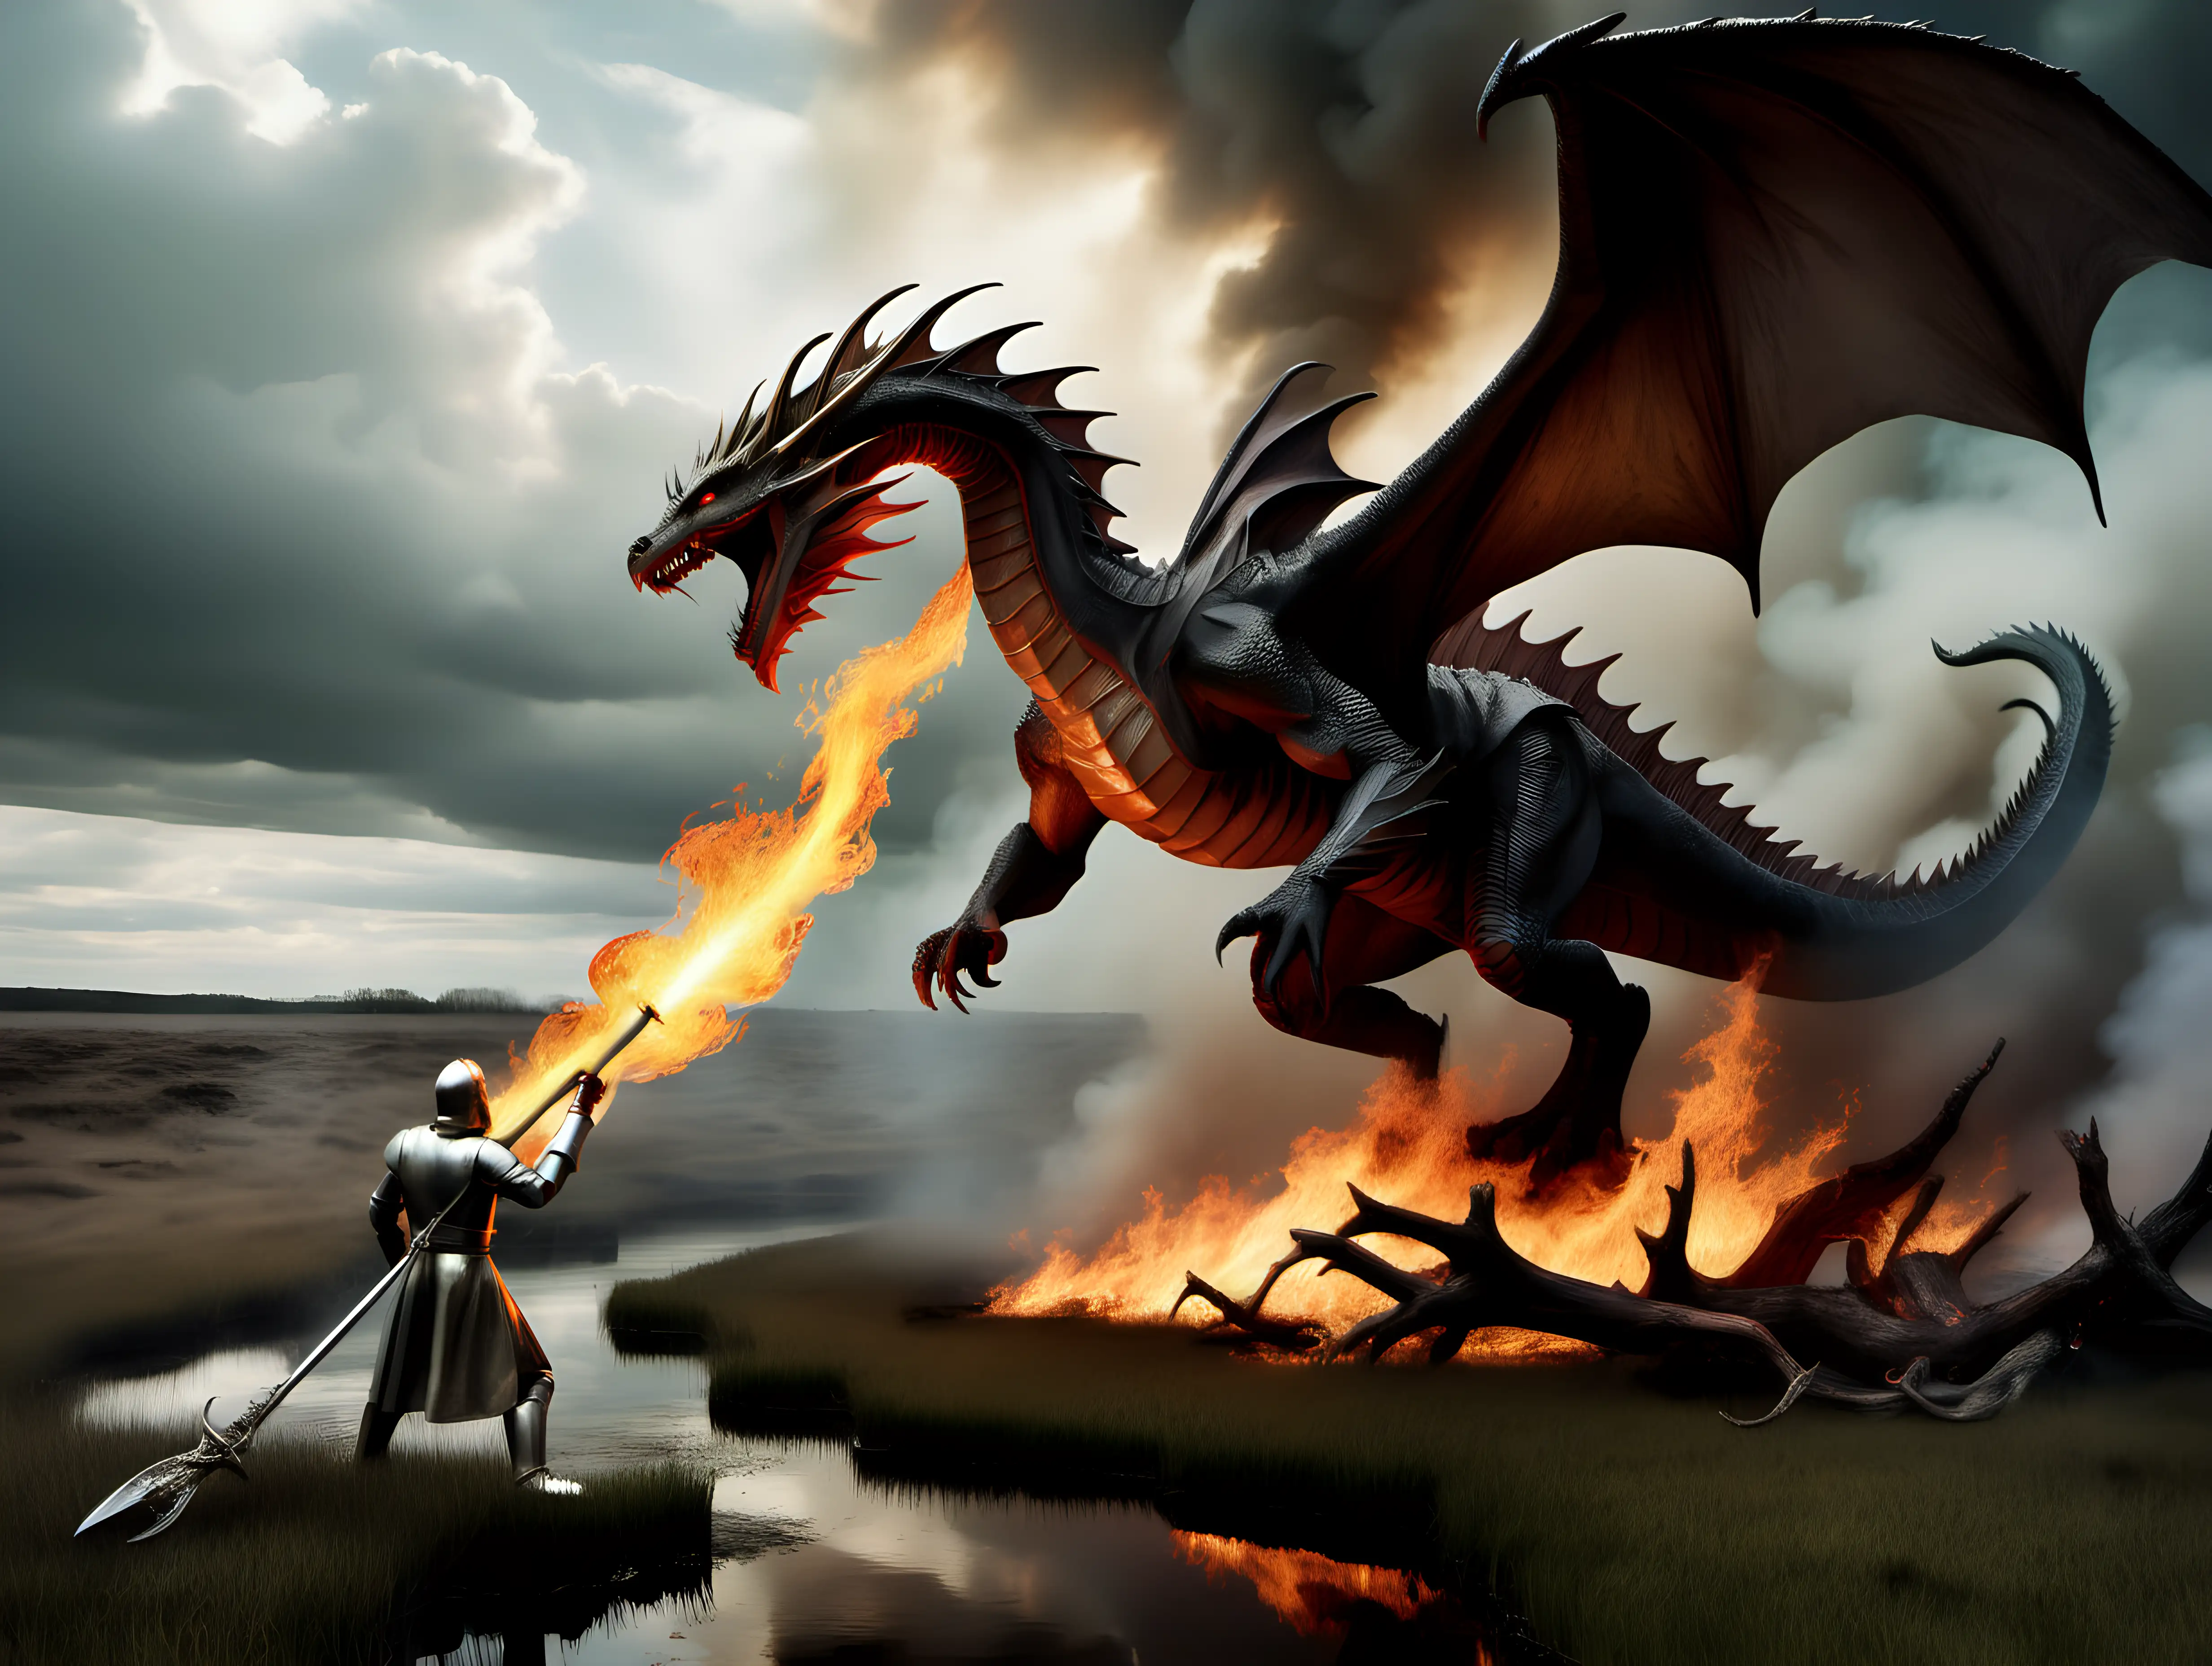 King Arthur slaying a fire breathing dragon in a bog